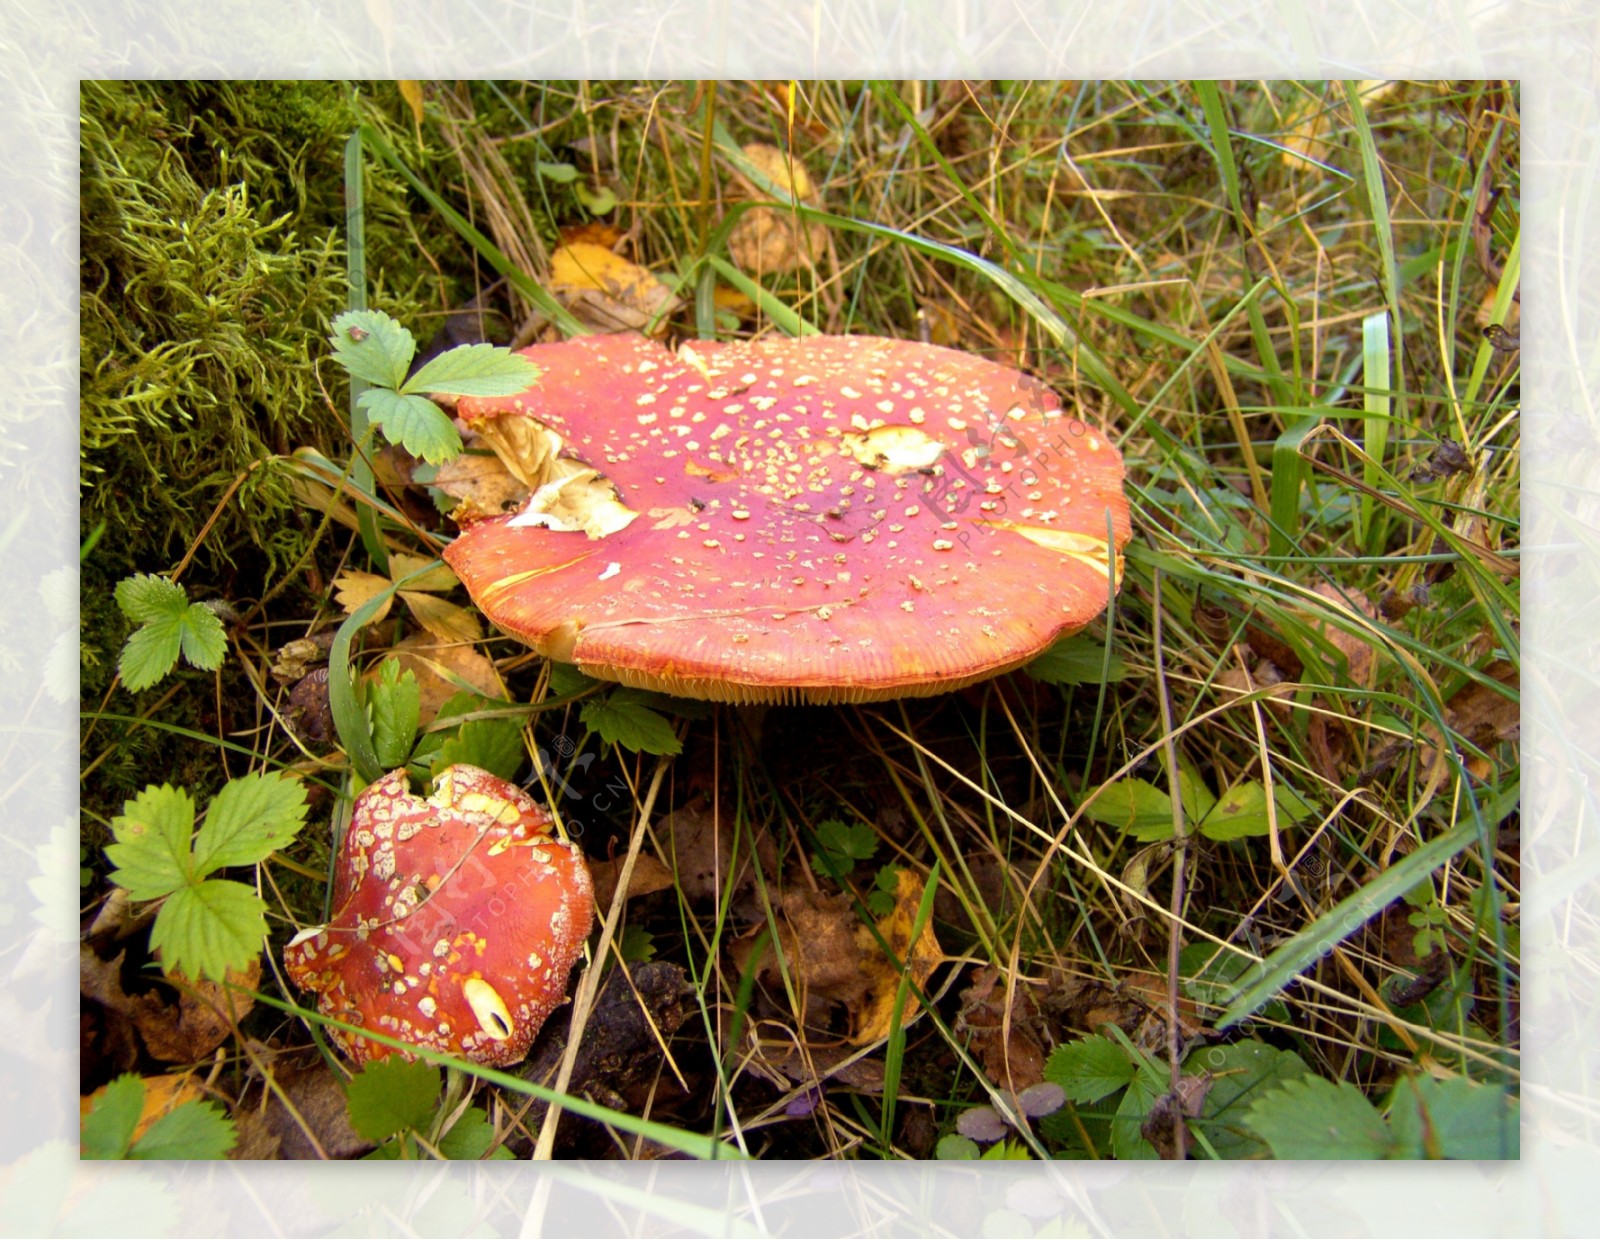 森林里的红蘑菇图片